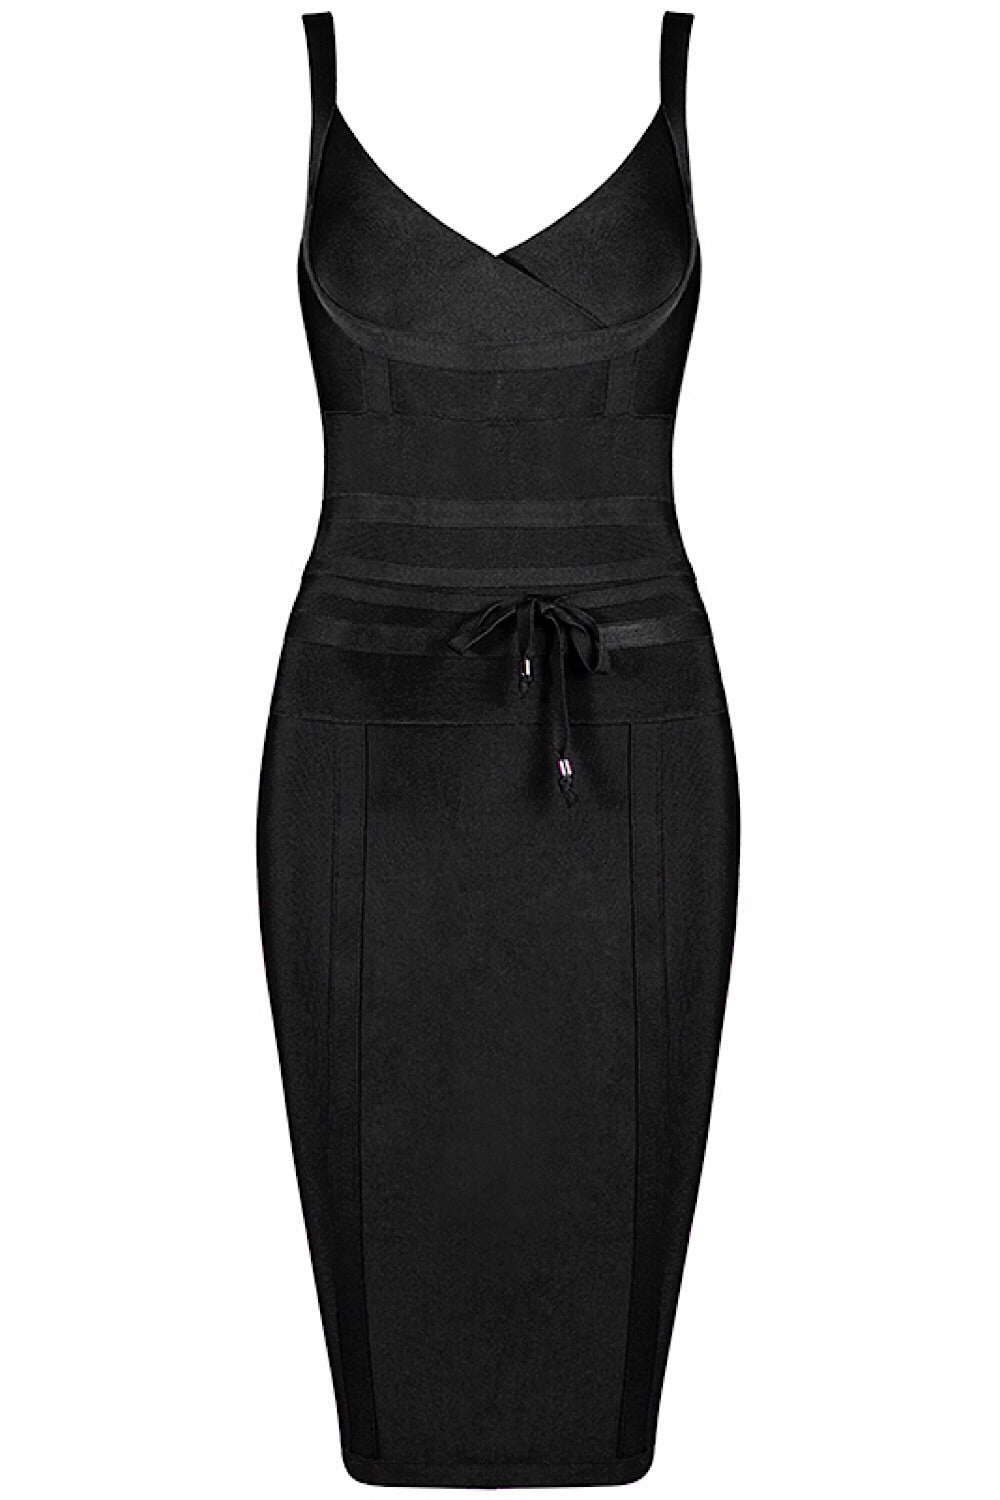 black dress with tie waist